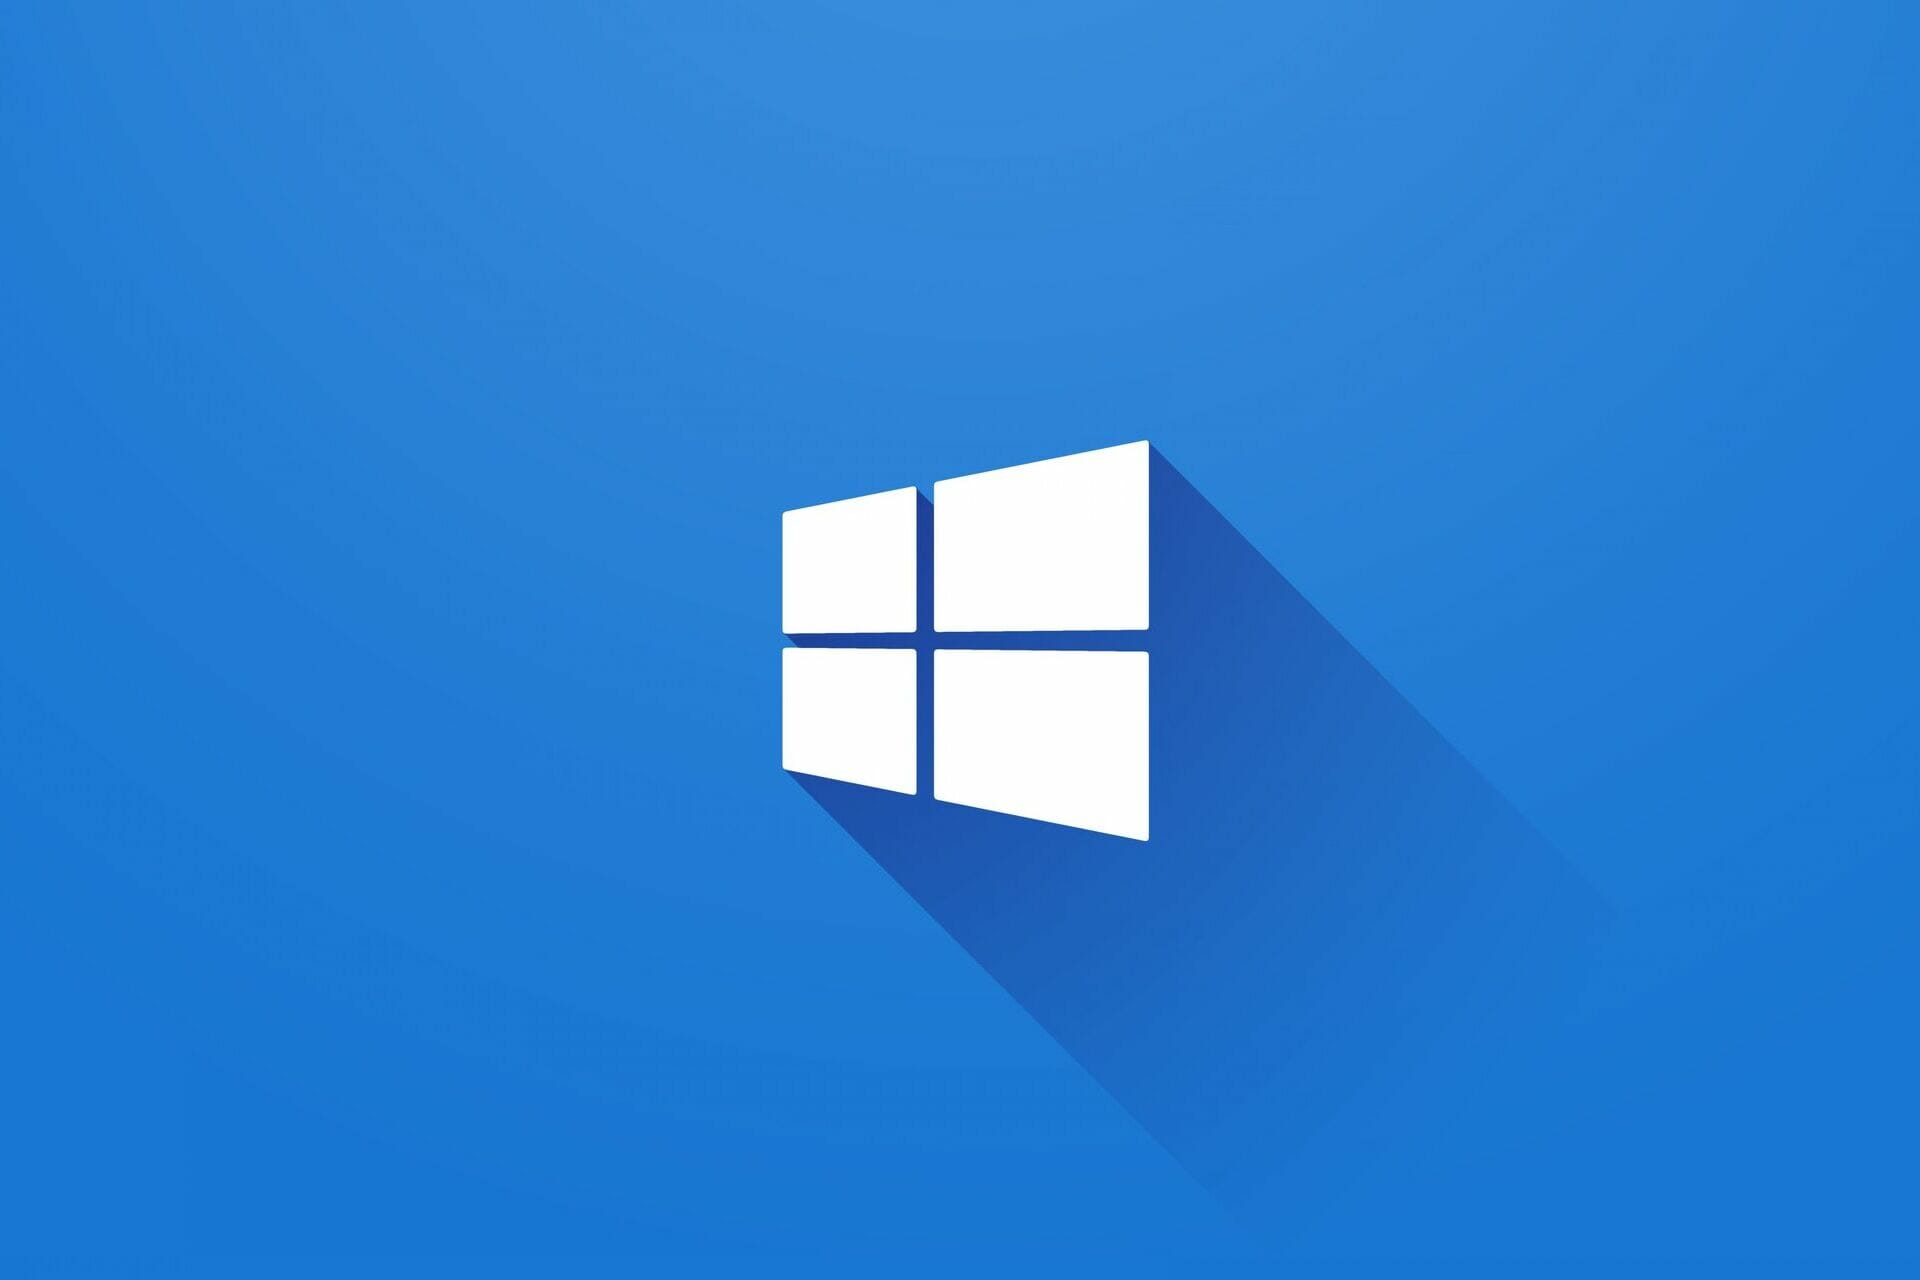 Tắt âm ứng dụng Windows 10: Tắt âm của ứng dụng Windows 10 sẽ giúp bạn tập trung vào công việc mà không bị những âm thanh phiền phức làm gián đoạn tâm trí. Với một thao tác đơn giản, bạn có thể tắt âm một cách dễ dàng và thoải mái làm việc trên máy tính của mình. Hãy tham khảo ngay hướng dẫn tắt âm ứng dụng Windows 10 để trải nghiệm sự tiện lợi và thoải mái trên máy tính!